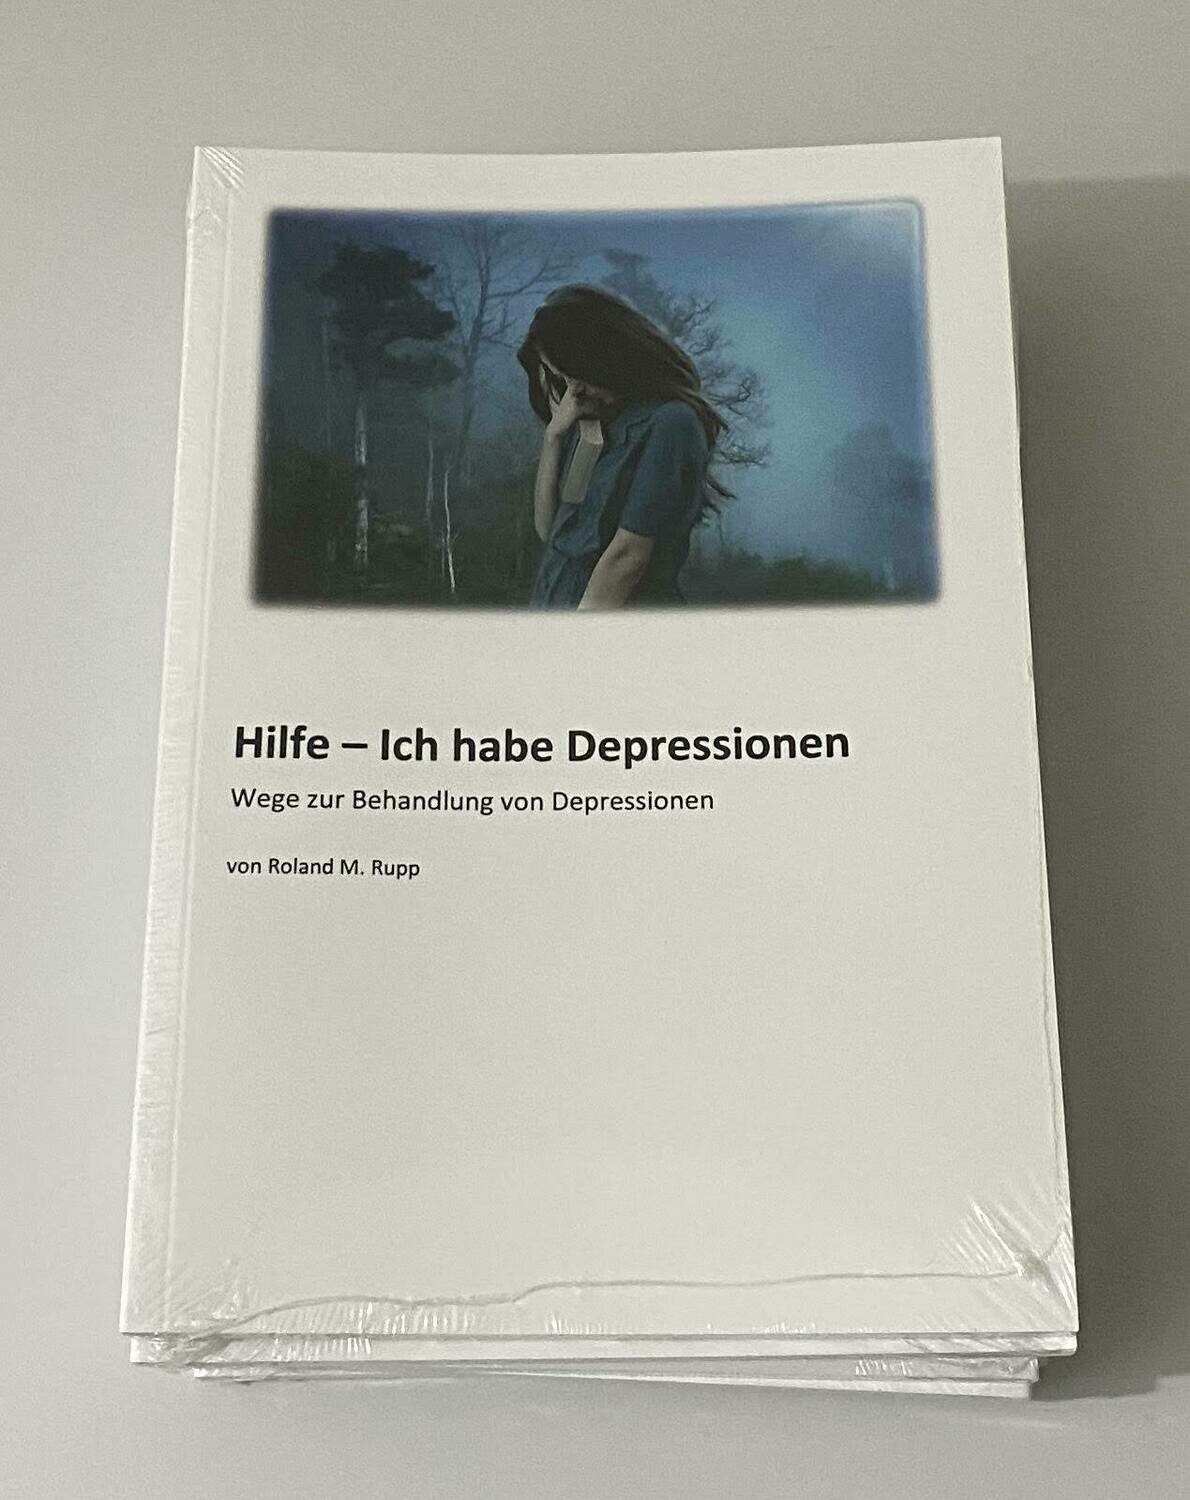 Buch "Hilfe - Ich habe Depressionen"